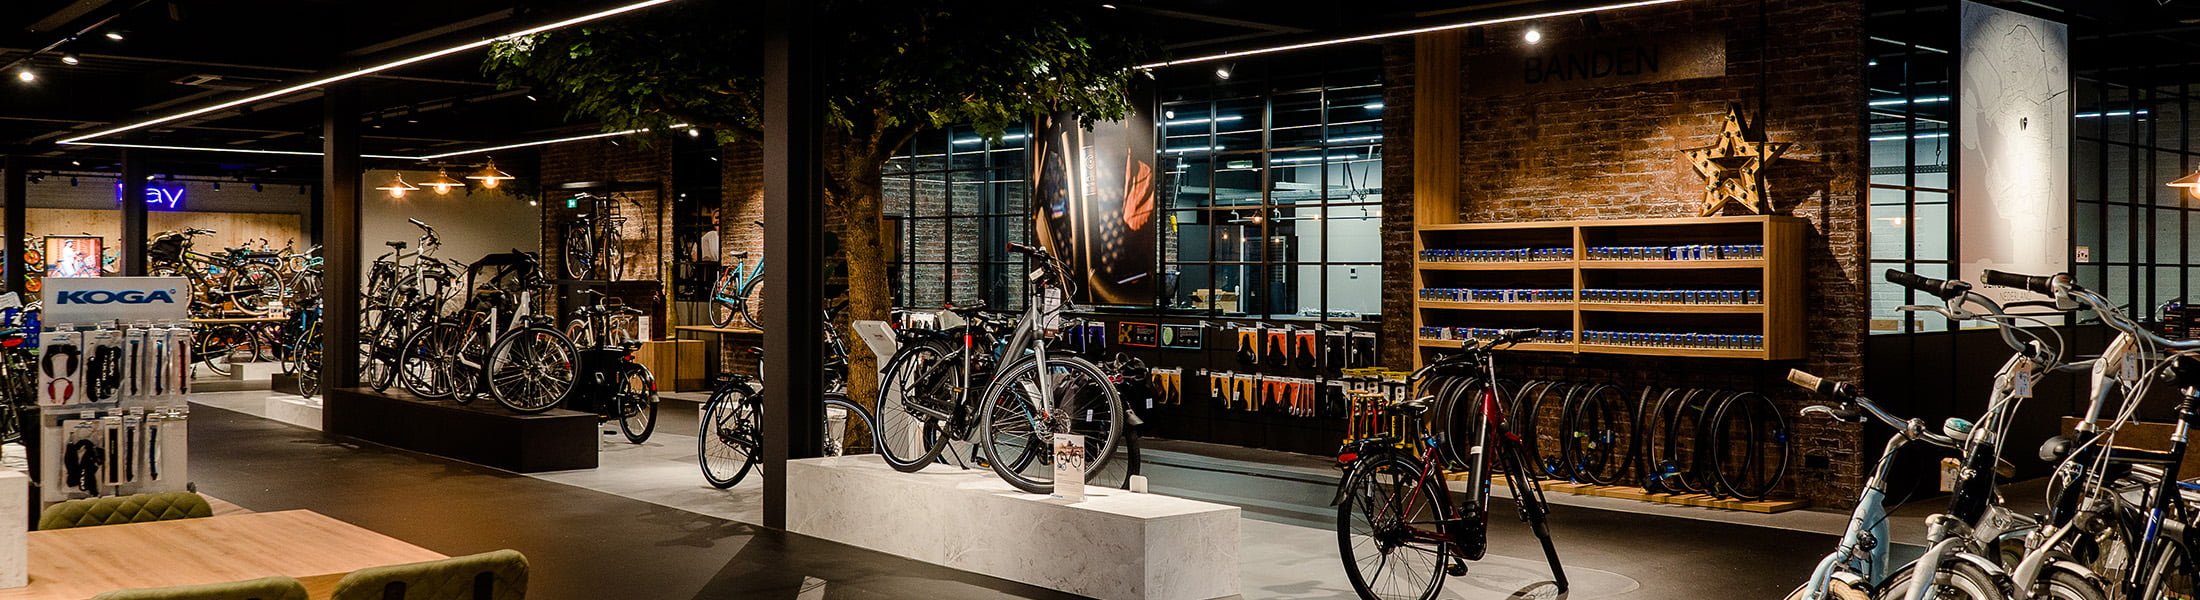 Multibrand store winkelinrichting Kees de Mooij - interieur fietsenwinkel